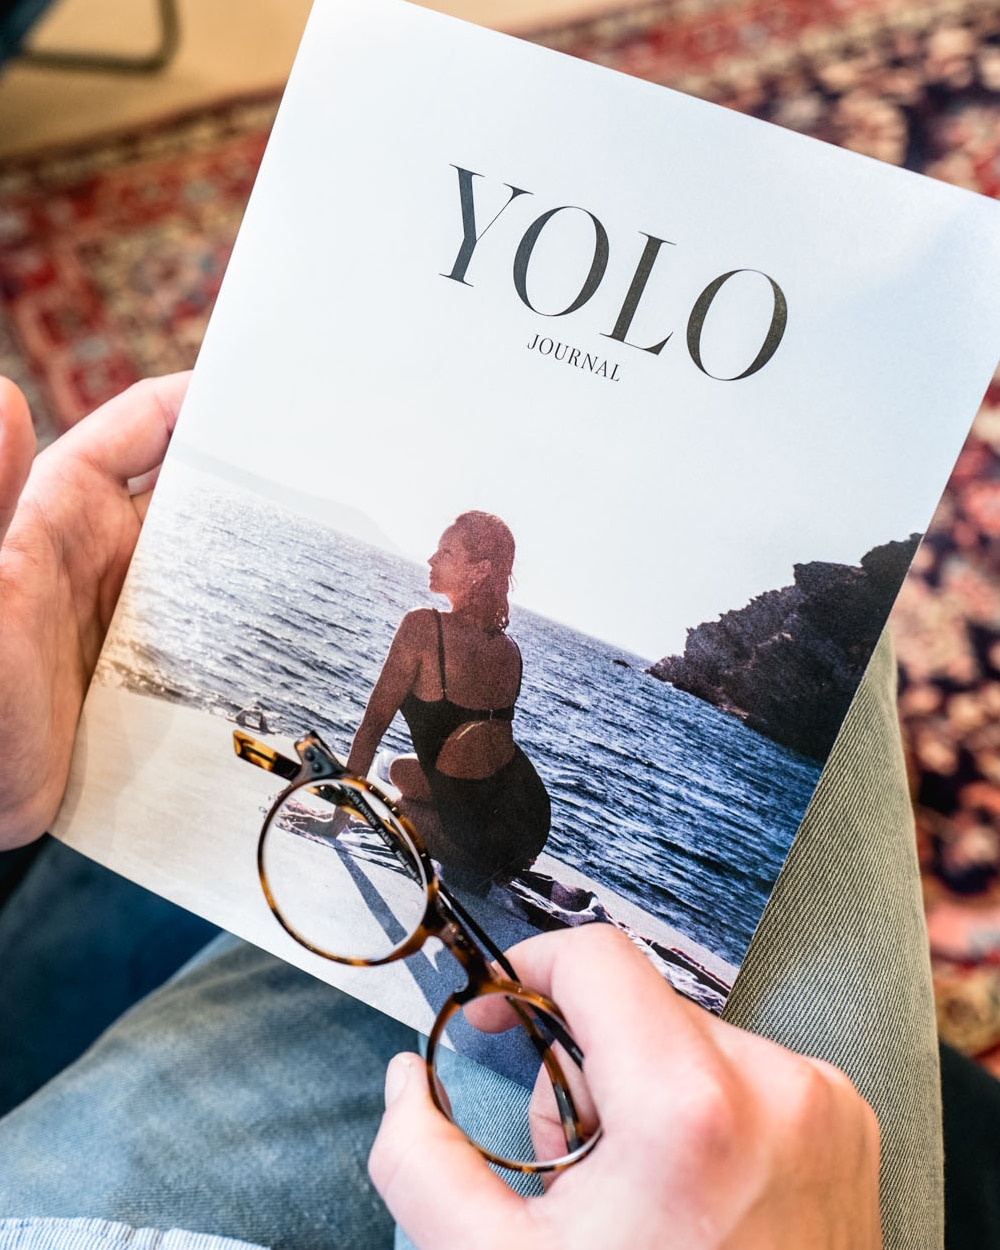 yolo-journal-magazine-fall-2019-1